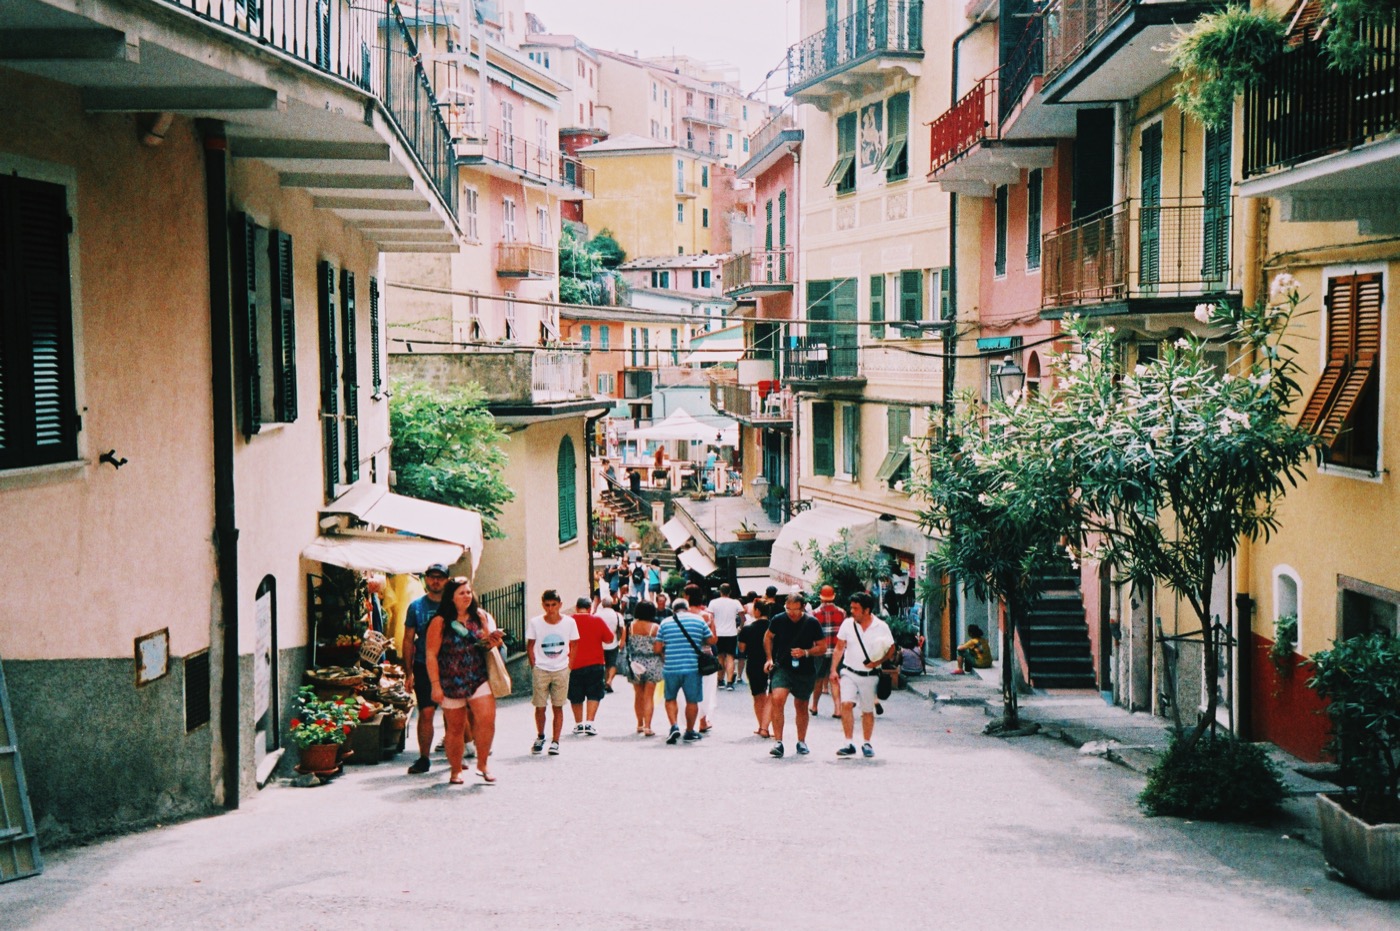 Manarola, Cinque Terre, Italy 35mm